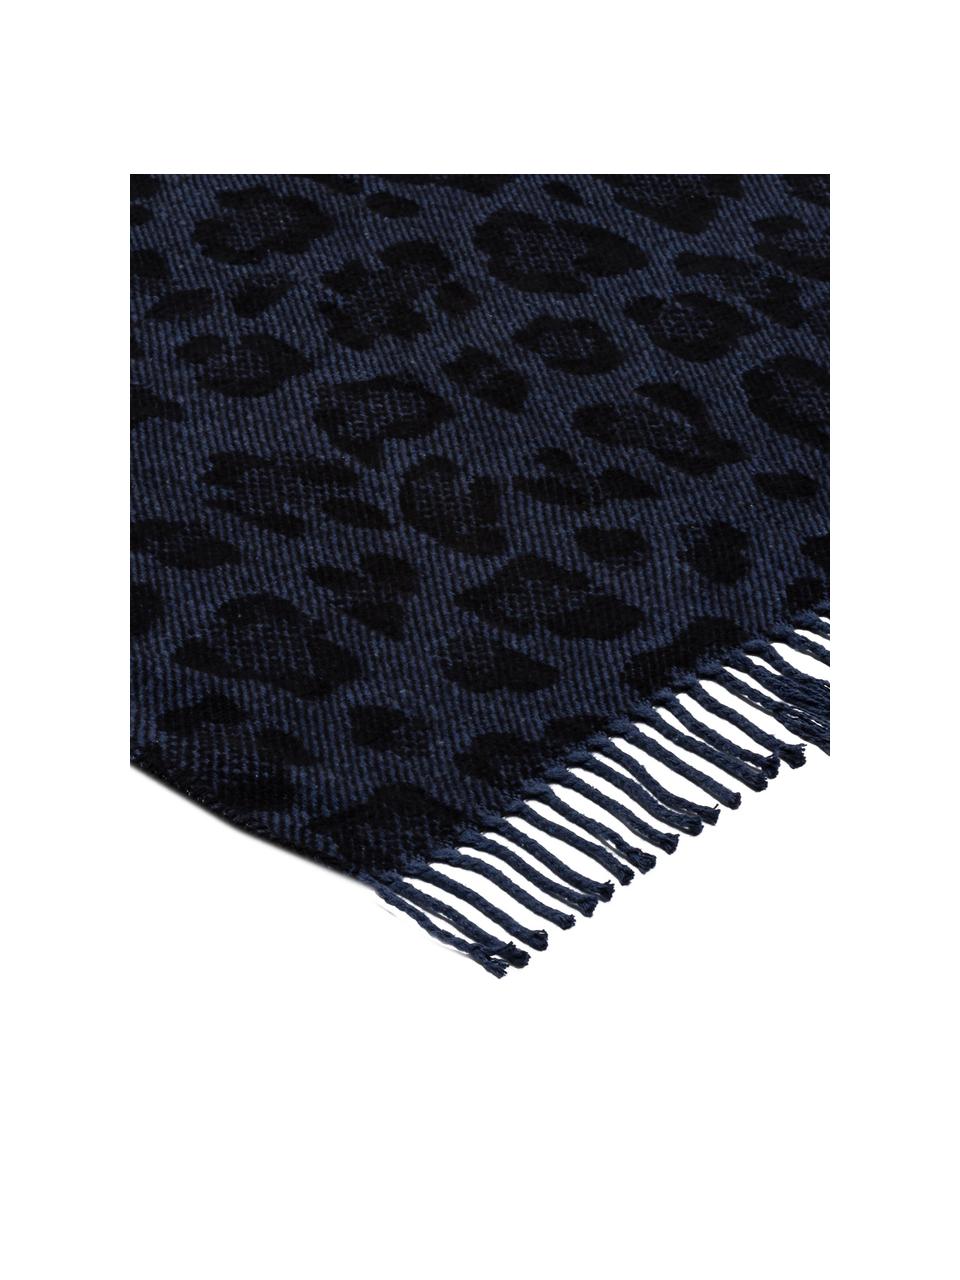 Plaid Bory mit Leoparden Print, 60% Baumwolle, 40% Acryl, Blau, B 150 x L 200